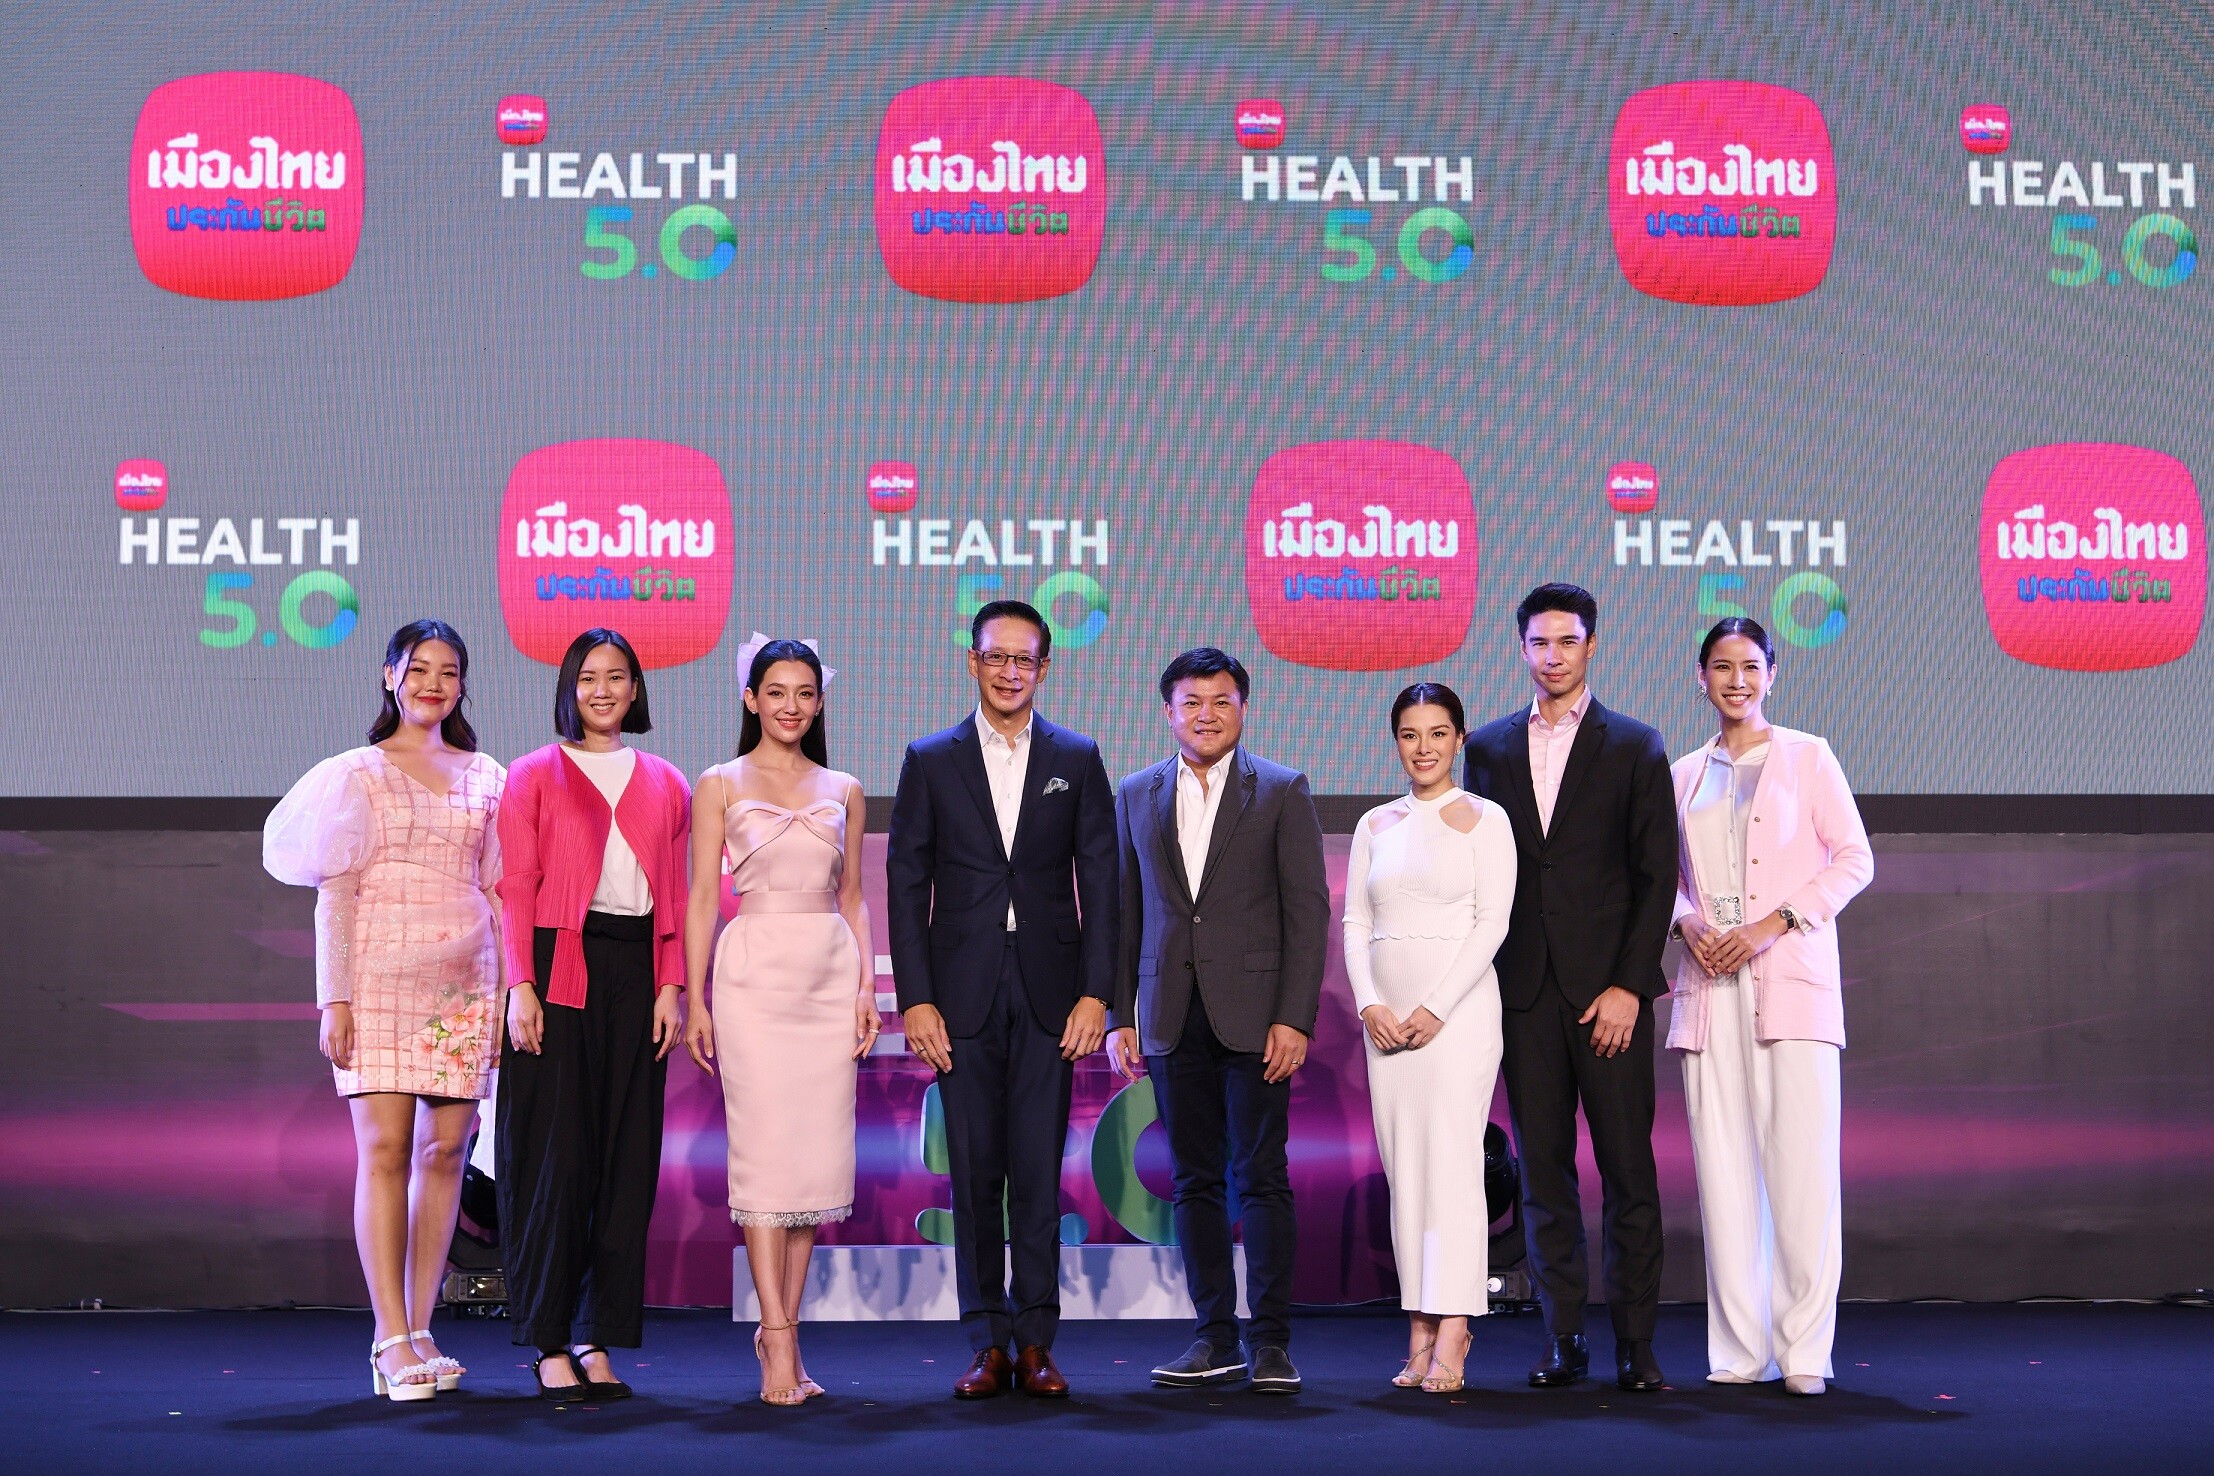 เมืองไทยประกันชีวิต เปิดกลยุทธ์ "Health 5.0" เดินหน้าตอบโจทย์ทุกความต้องการ ด้วยความคุ้มครองสุขภาพที่เข้าถึงได้อย่างเท่าเทียม